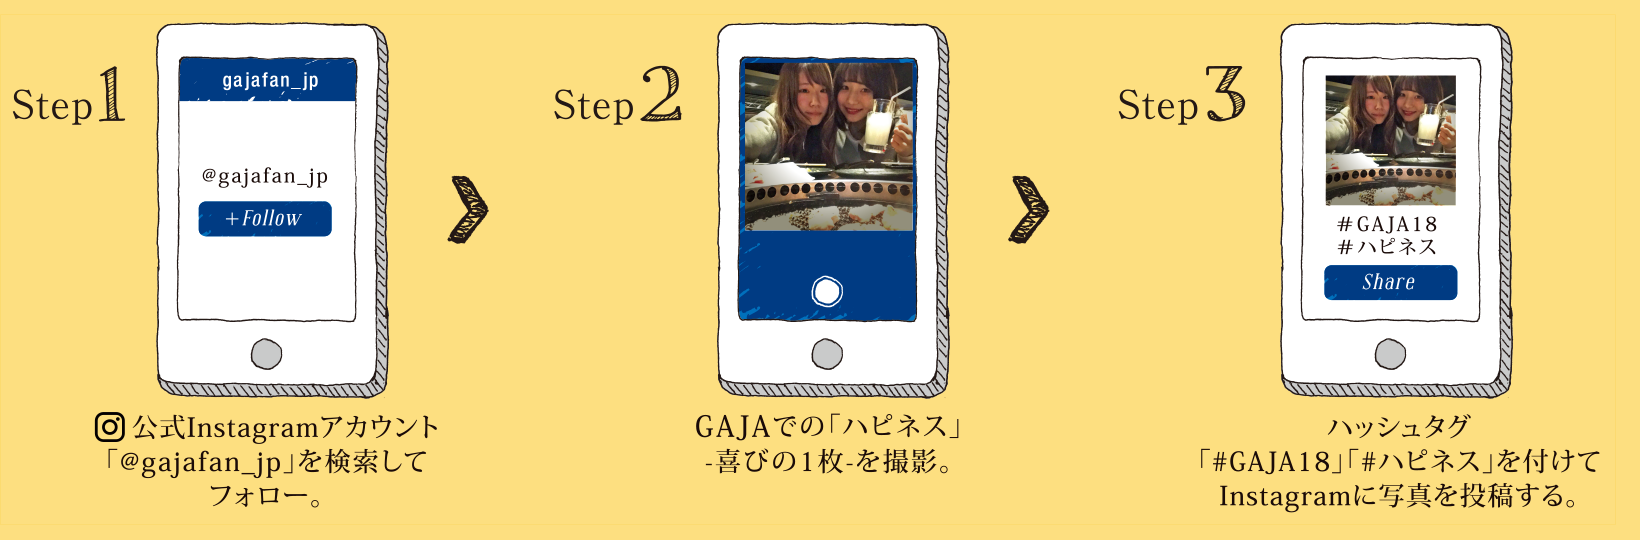 [Step1]公式Instagramアカウント「@GAjAfan_jp」を検索してフォロー。[Step2]GAjAでの「ハピネス」-喜びの1枚-を撮影。[Step3]ハッシュタグ「#GAjA18」「#ハピネス」を付けてInstagramに写真んを投稿する。 ★お会計時 投稿画面をご提示で税込支払金額より500円を割引させていただきます。